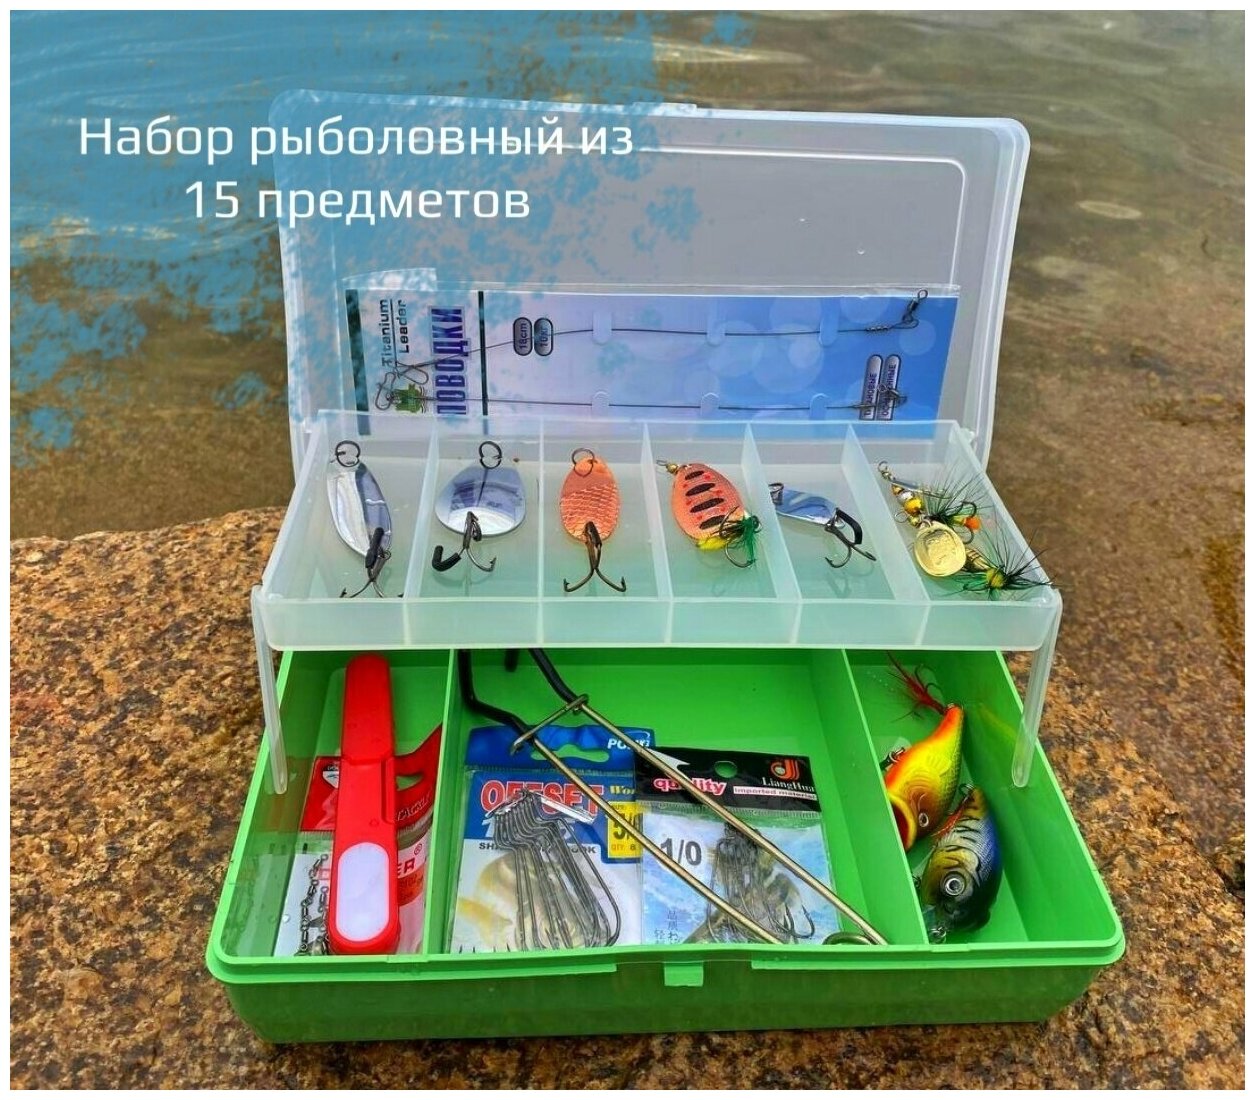 Рыболовный набор для спиннинговой рыбалки /Набор блесен для рыбалки/рыболовные снасти